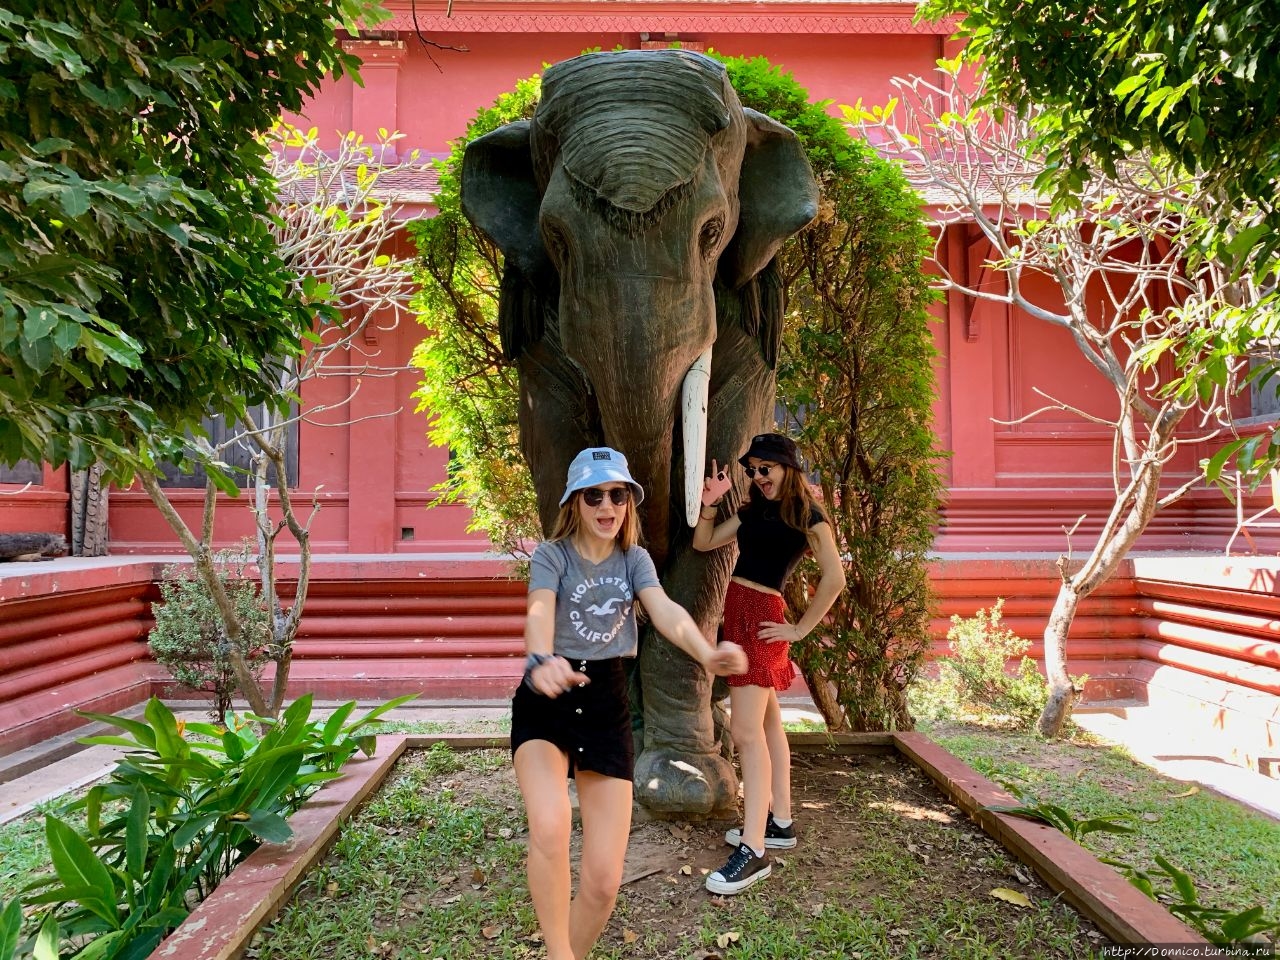 Национальный музей Камбоджи Пномпень, Камбоджа